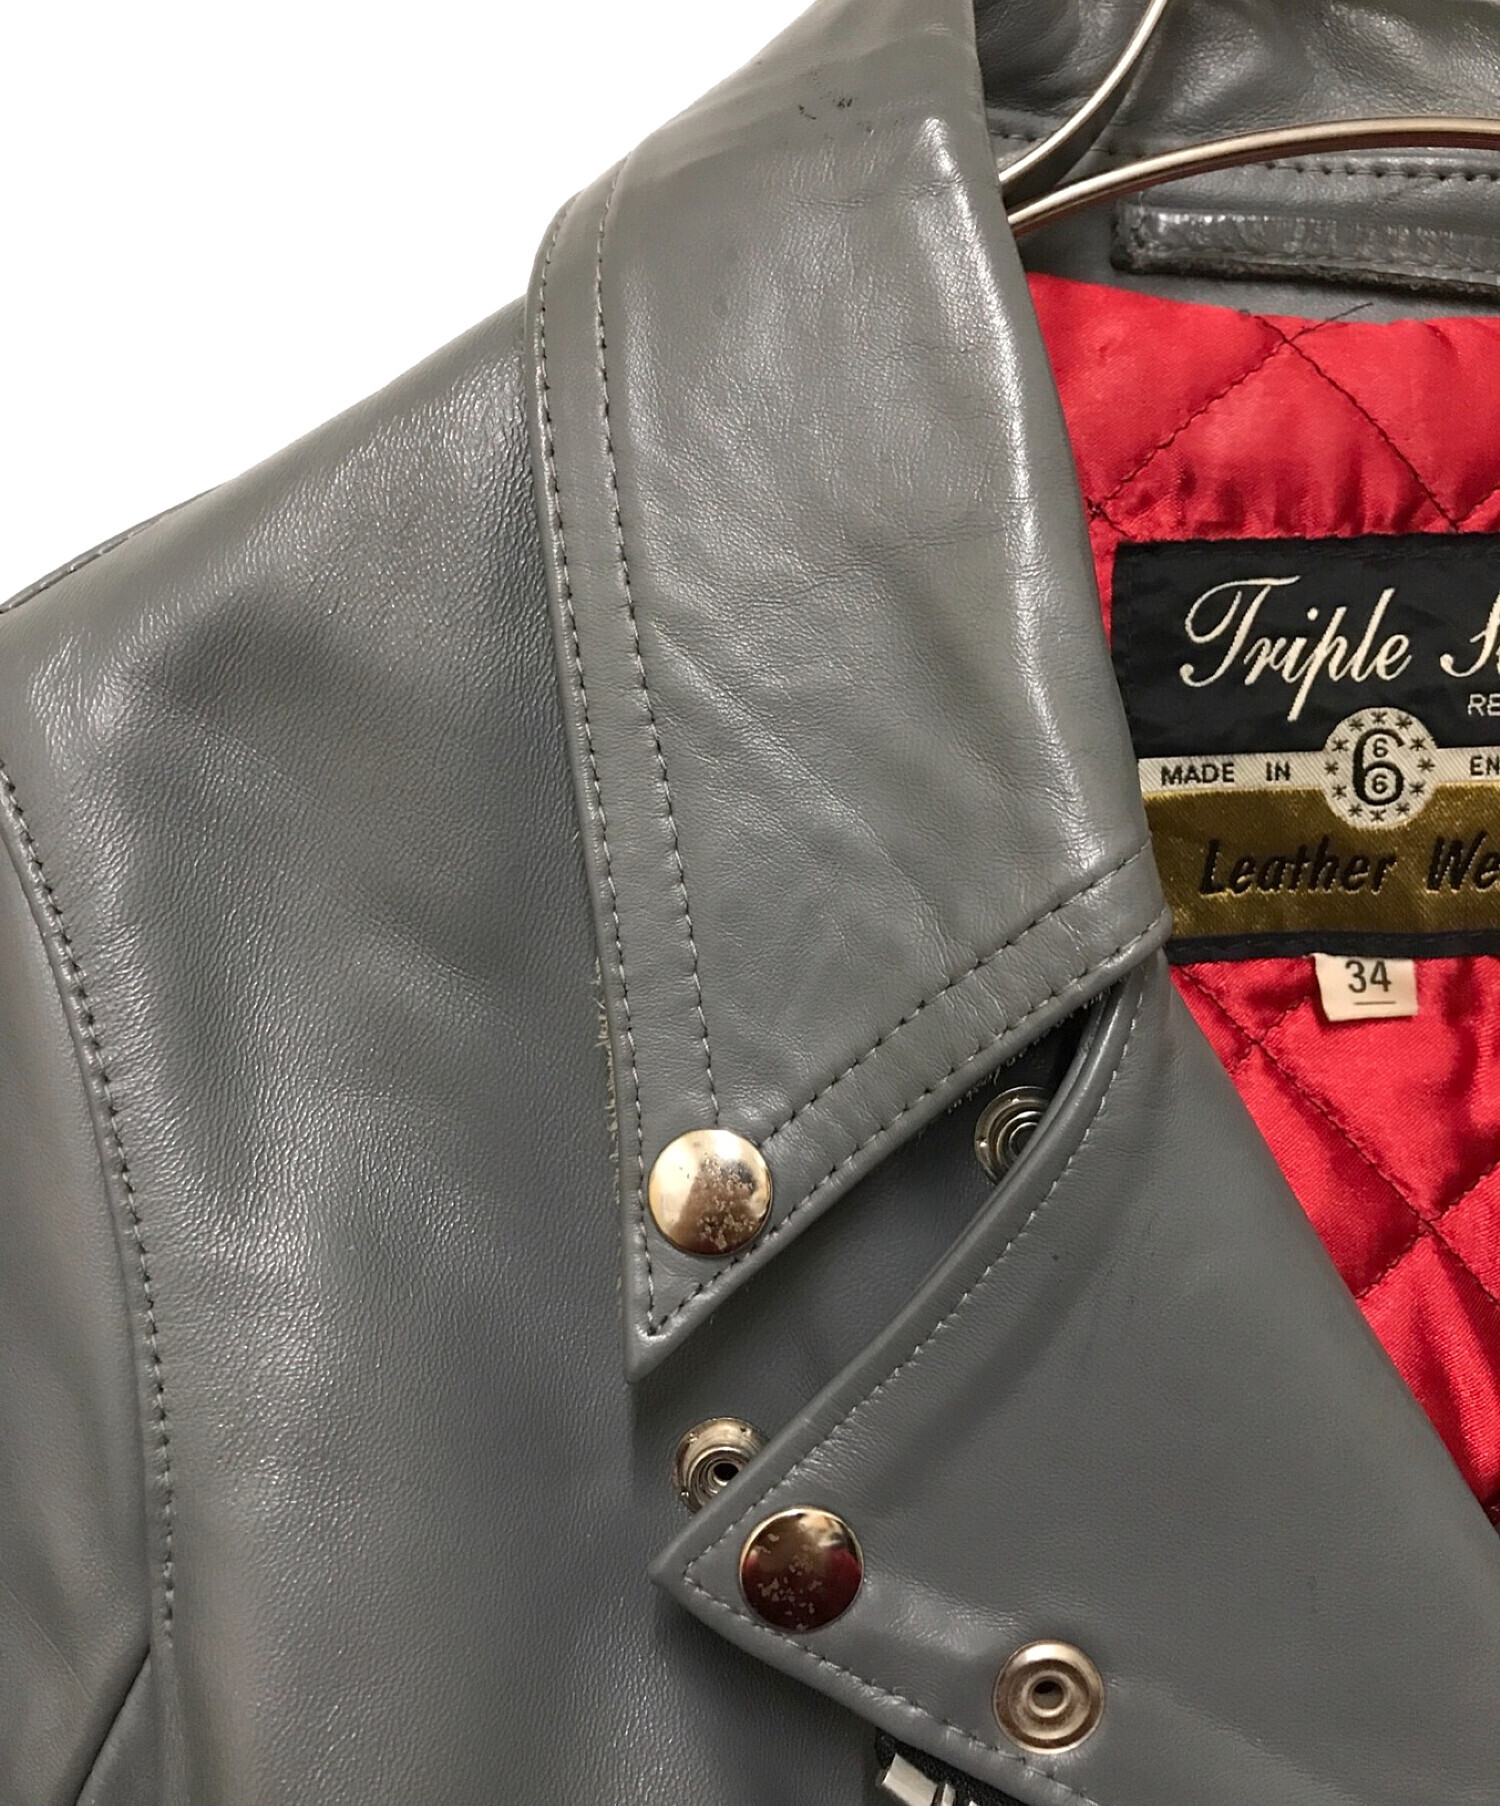 666 leather wear (666レザーウェア) ライダースジャケット グレー サイズ:34